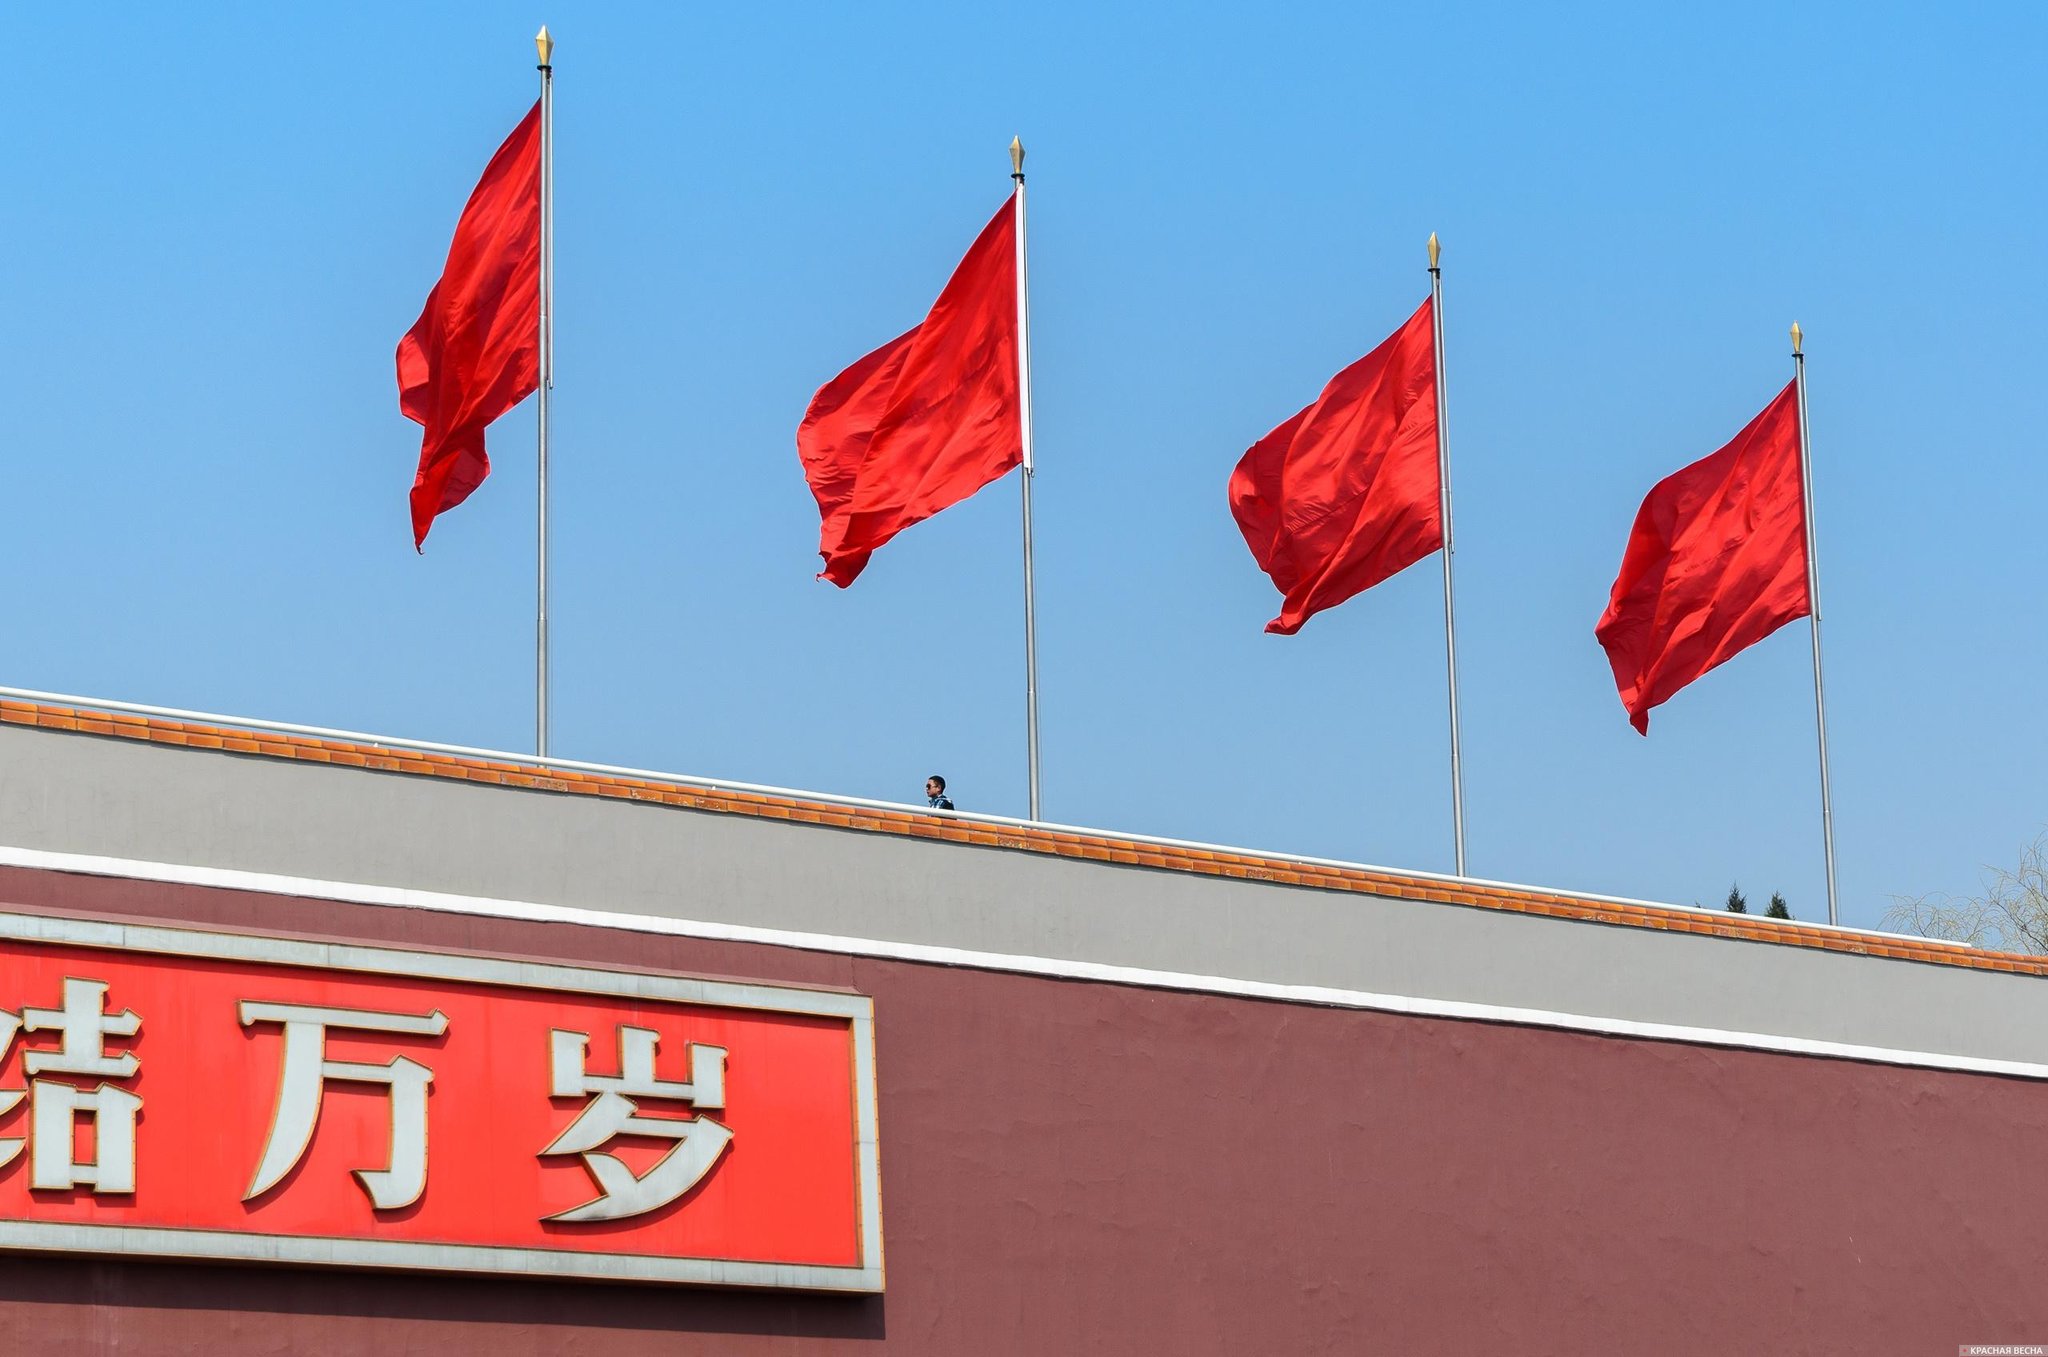  Красные флаги на Вратах Небесного Спокойствия (Тяньаньмэнь), Пекин, Китай